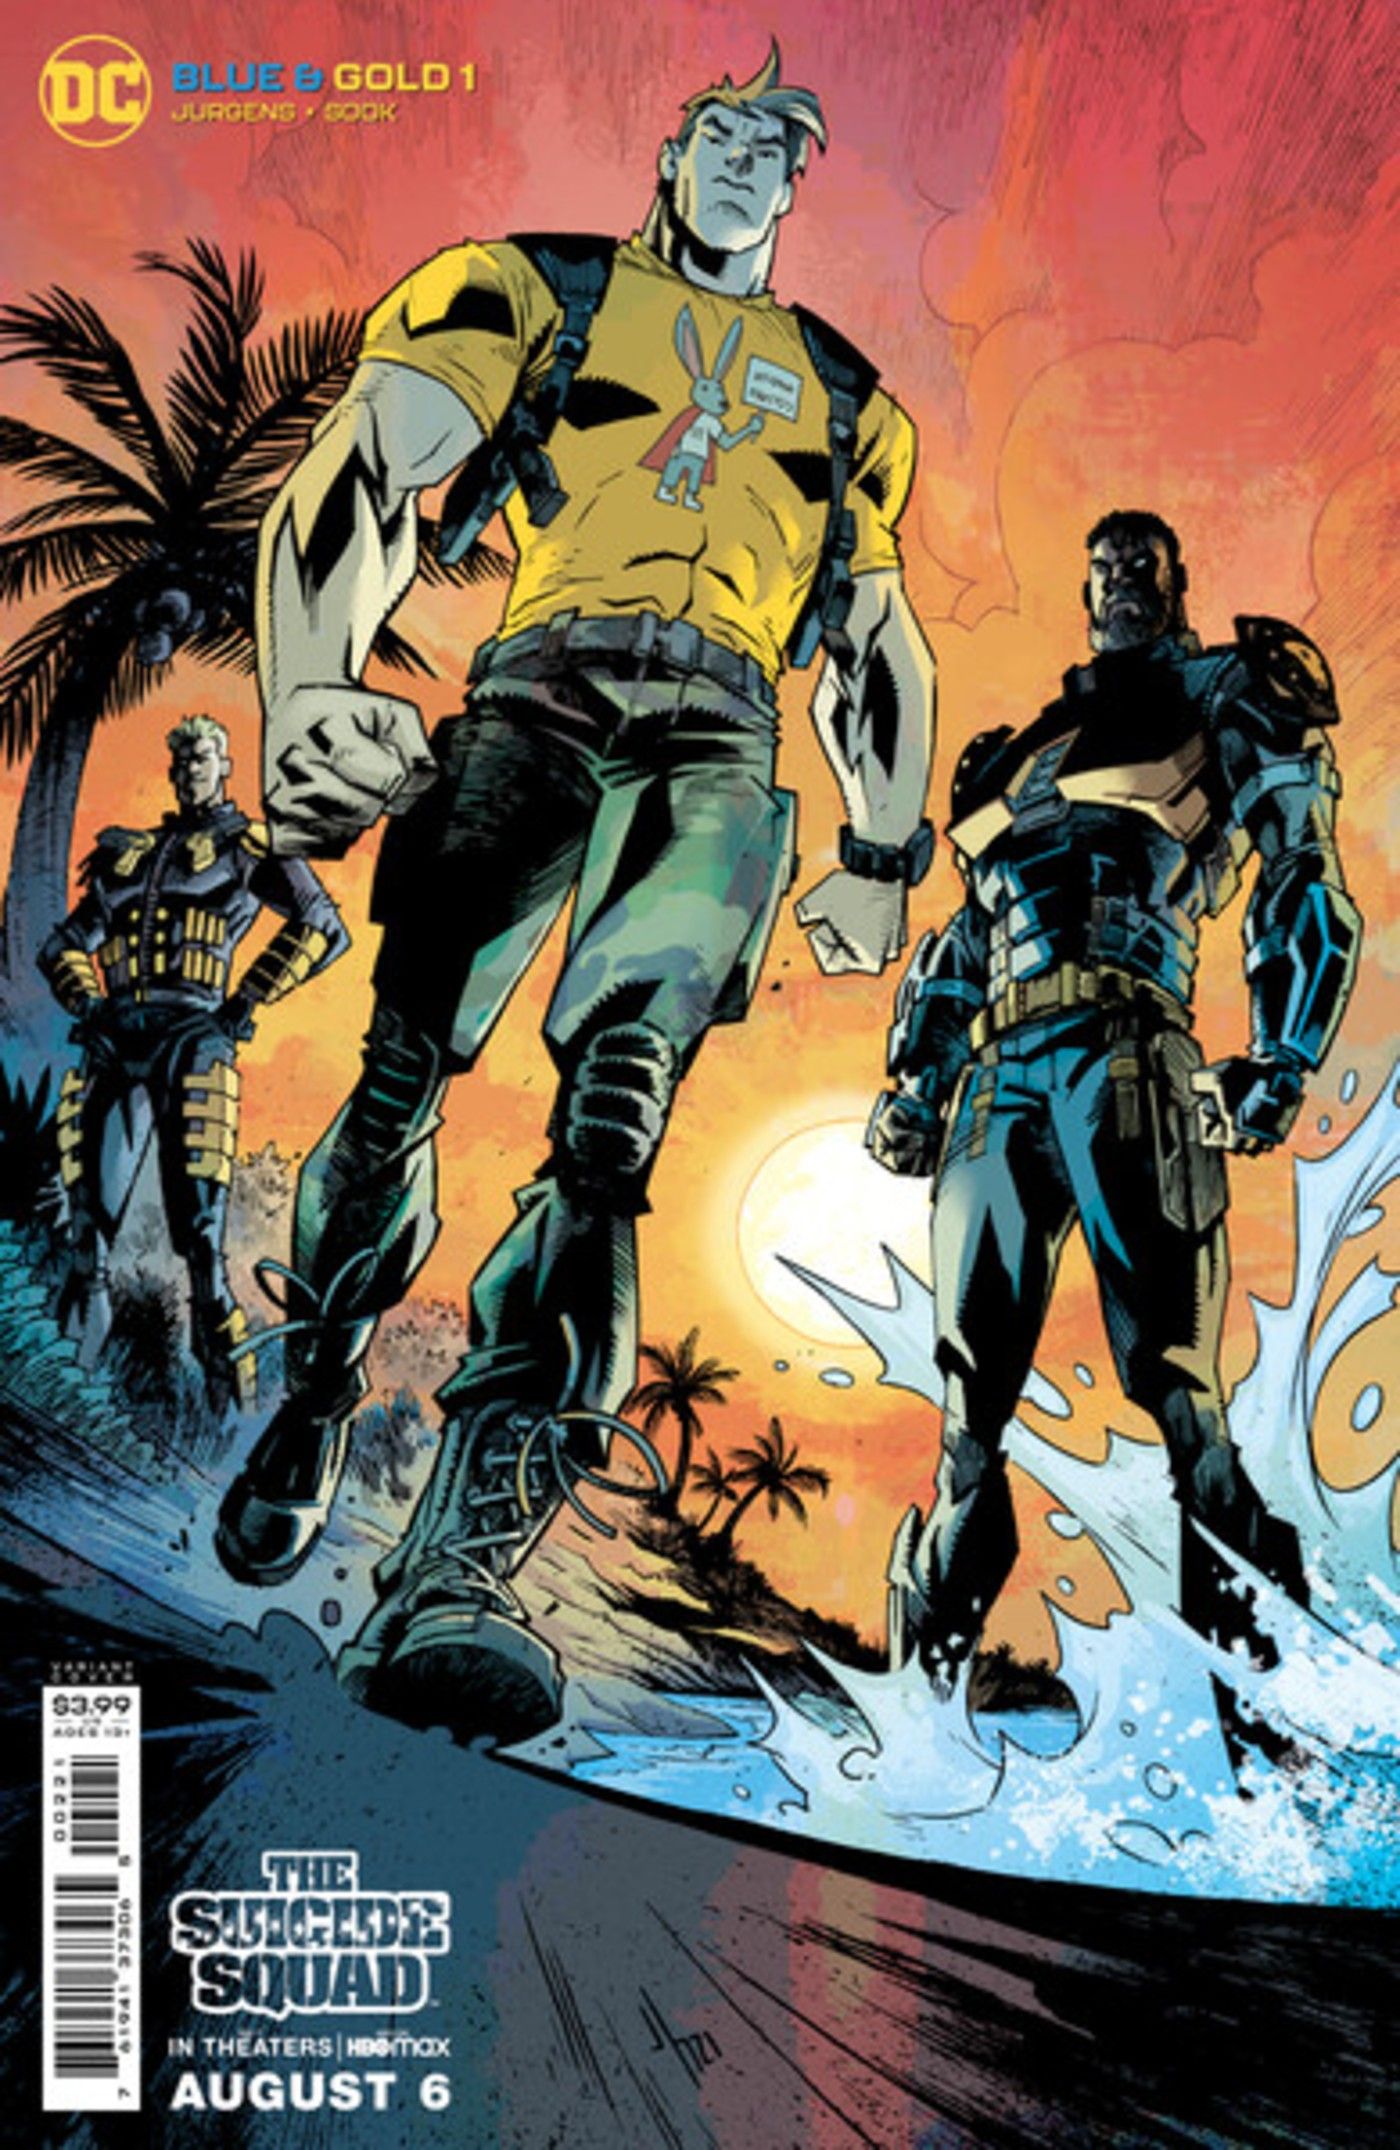 DC Revela Capas De Quadrinhos Inspiradas No Filme 'The Suicide Squad' 2